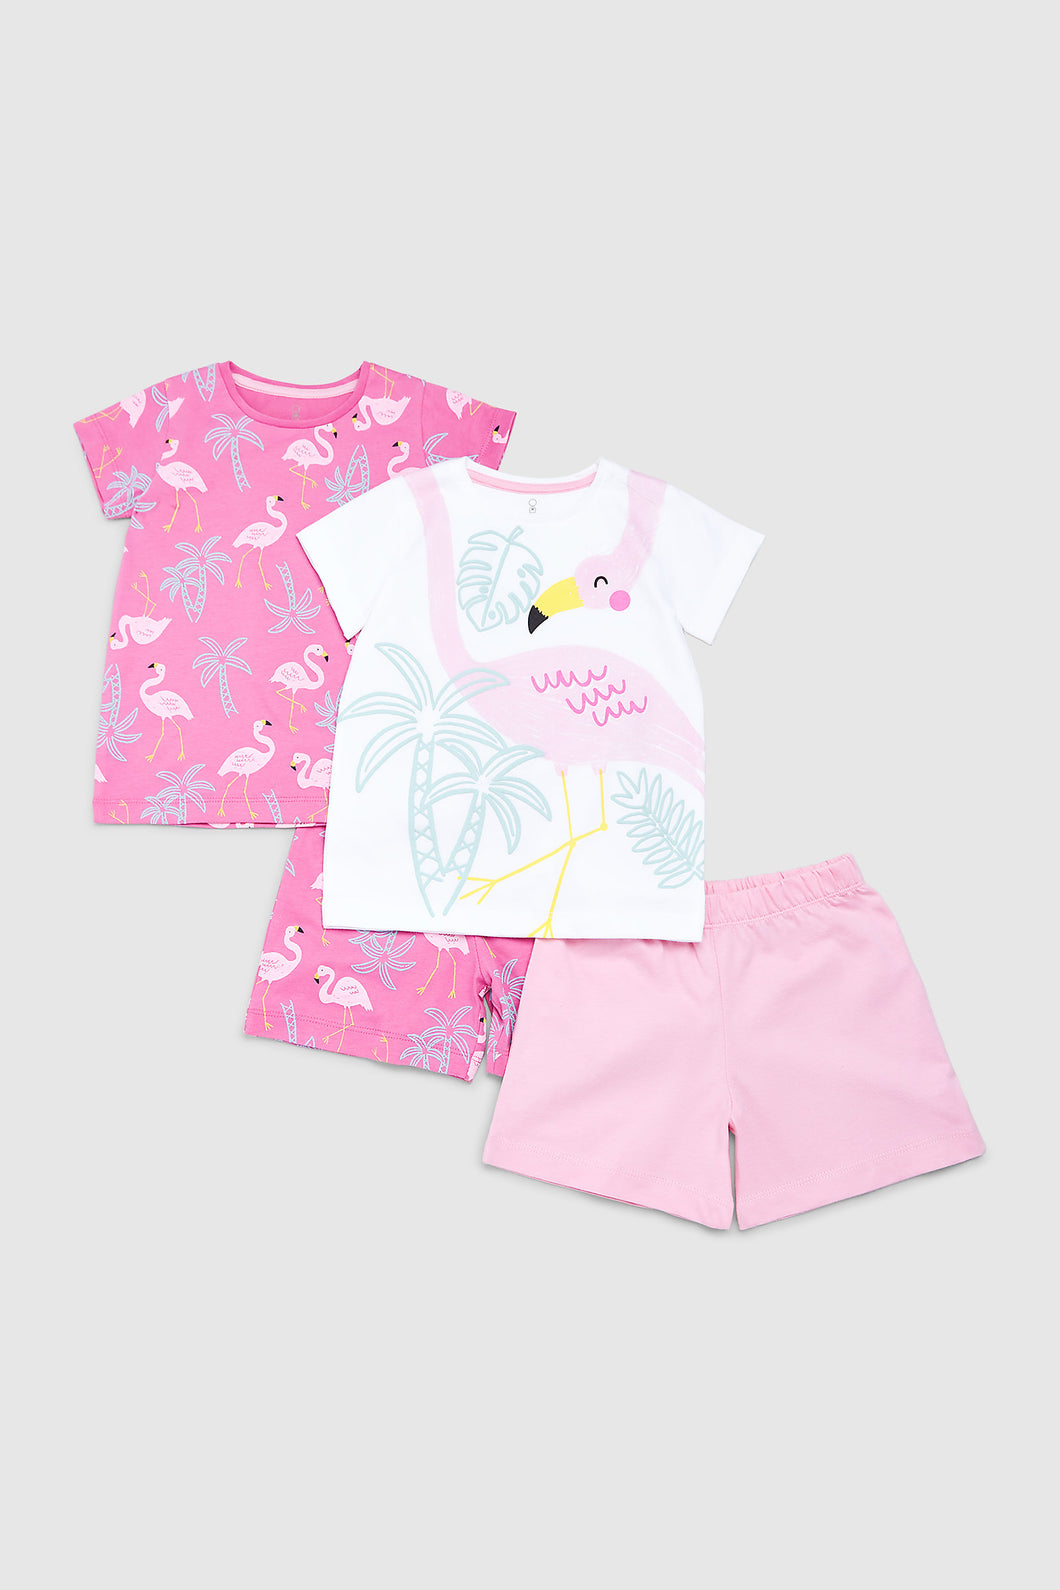 Mothercare Flamingo Shortie Pyjamas - 2 Pack